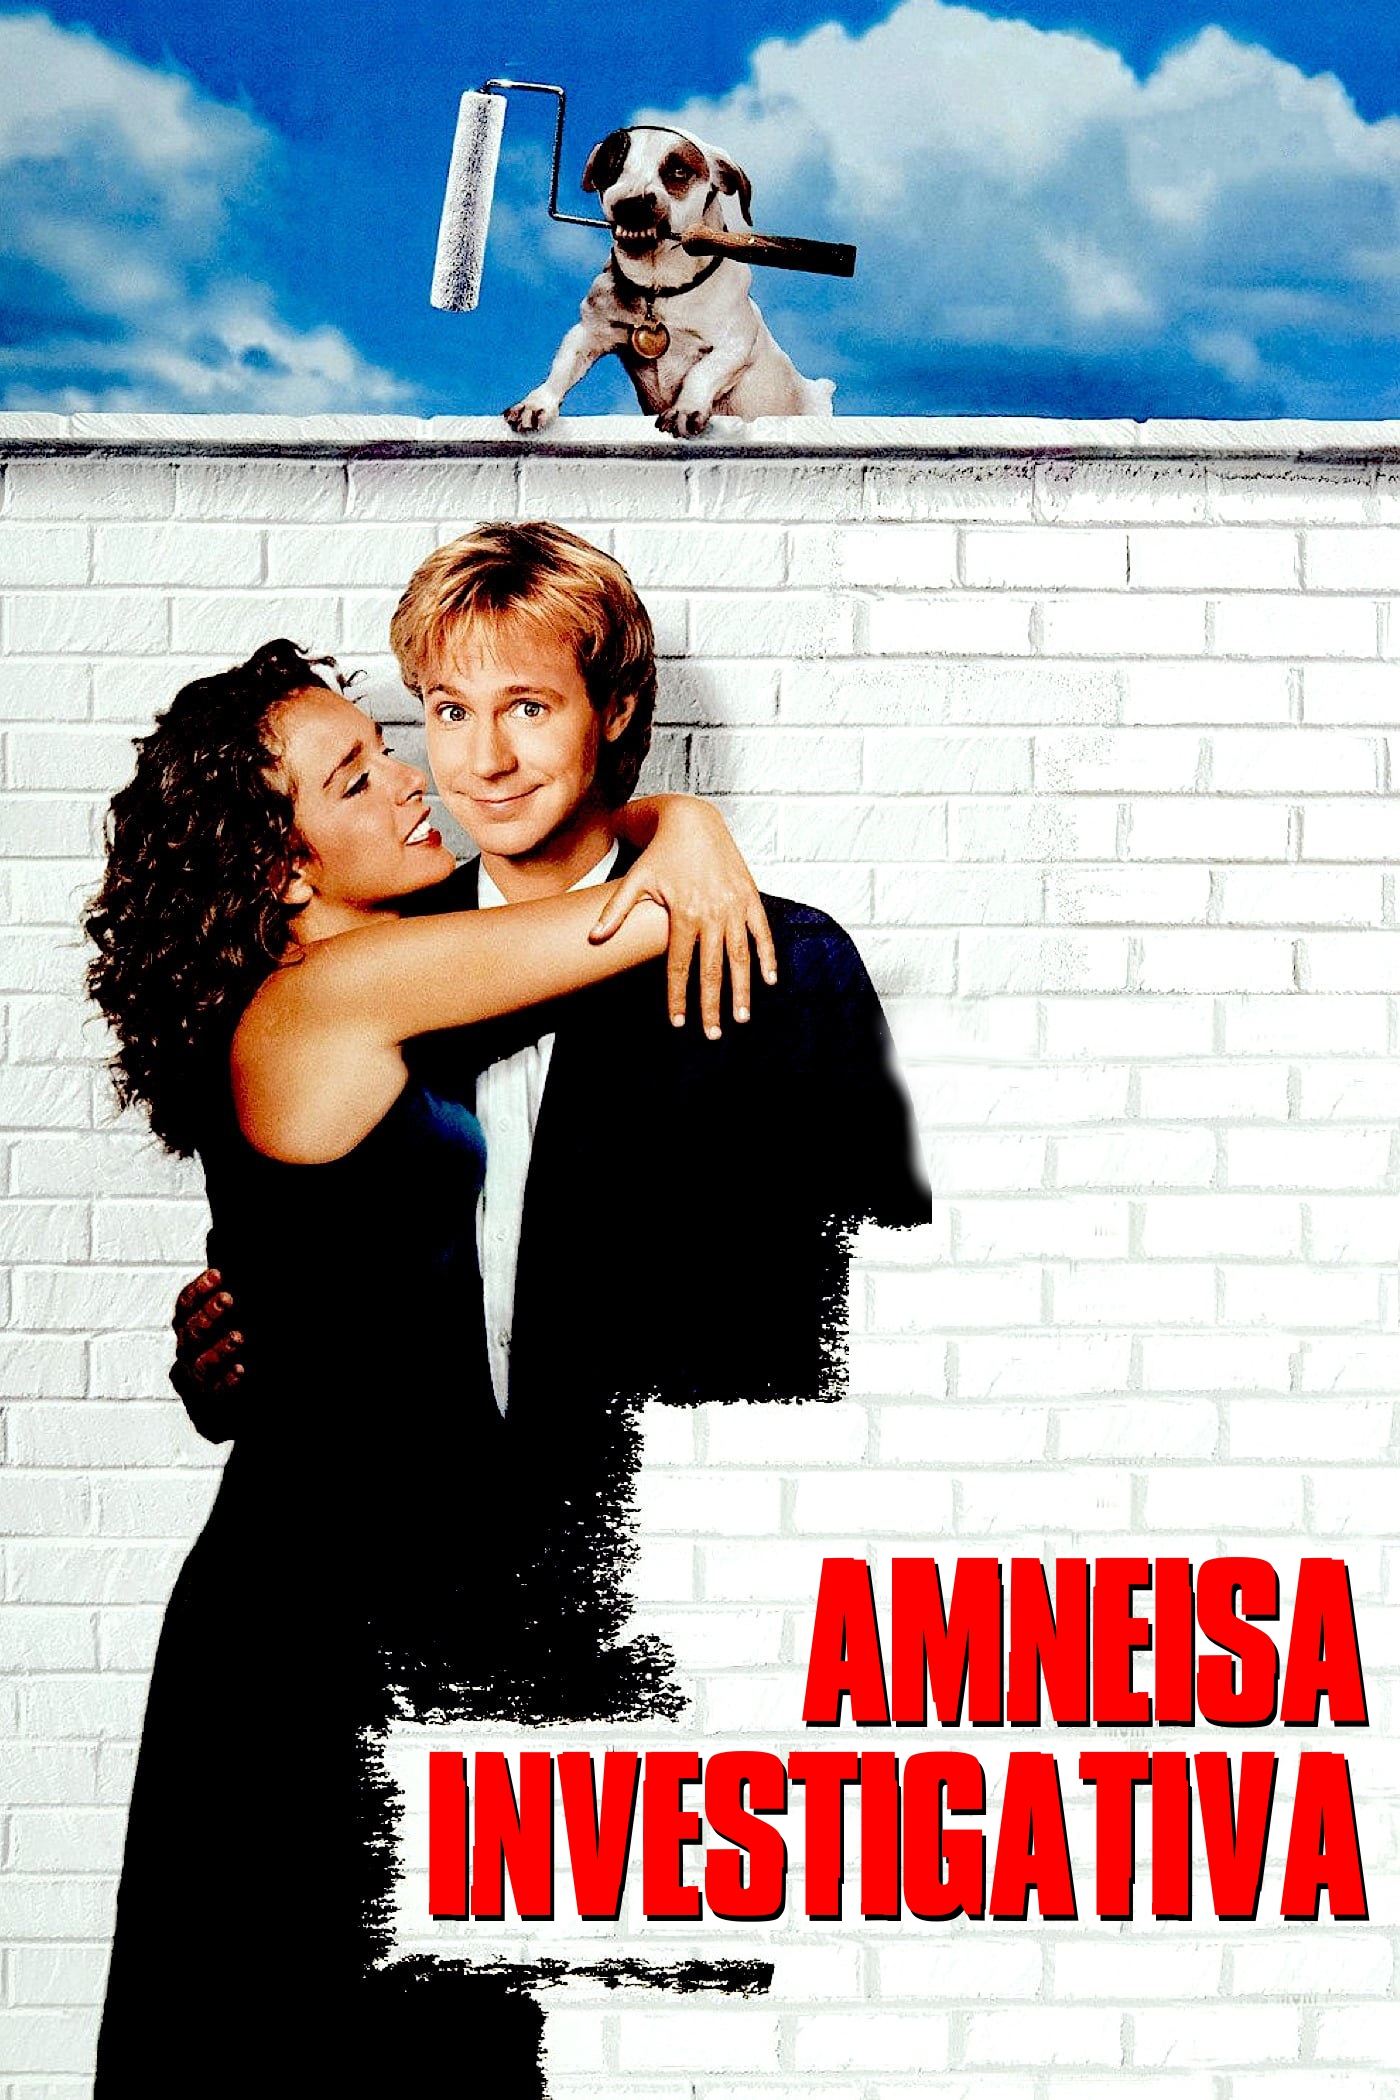 Amnesia investigativa [HD] (1994)